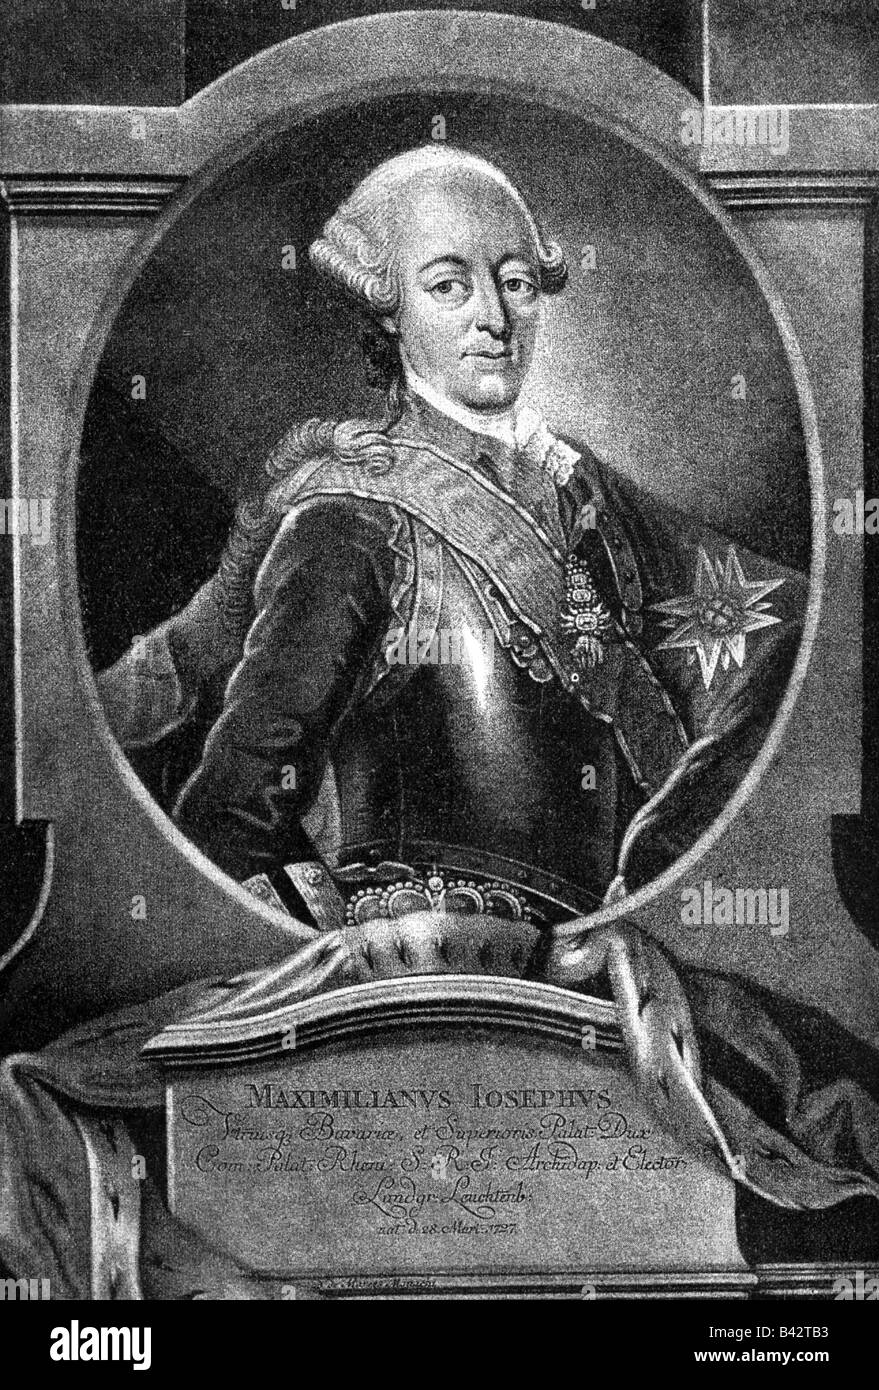 Maximilien III, 28.3.1728 - 30.12.1777, le roi de Bavière 20.1.1745 - 30.12.1777, demi-longueur, gravure sur cuivre, 18e siècle, l'artiste a le droit d'auteur , de ne pas être effacé Banque D'Images